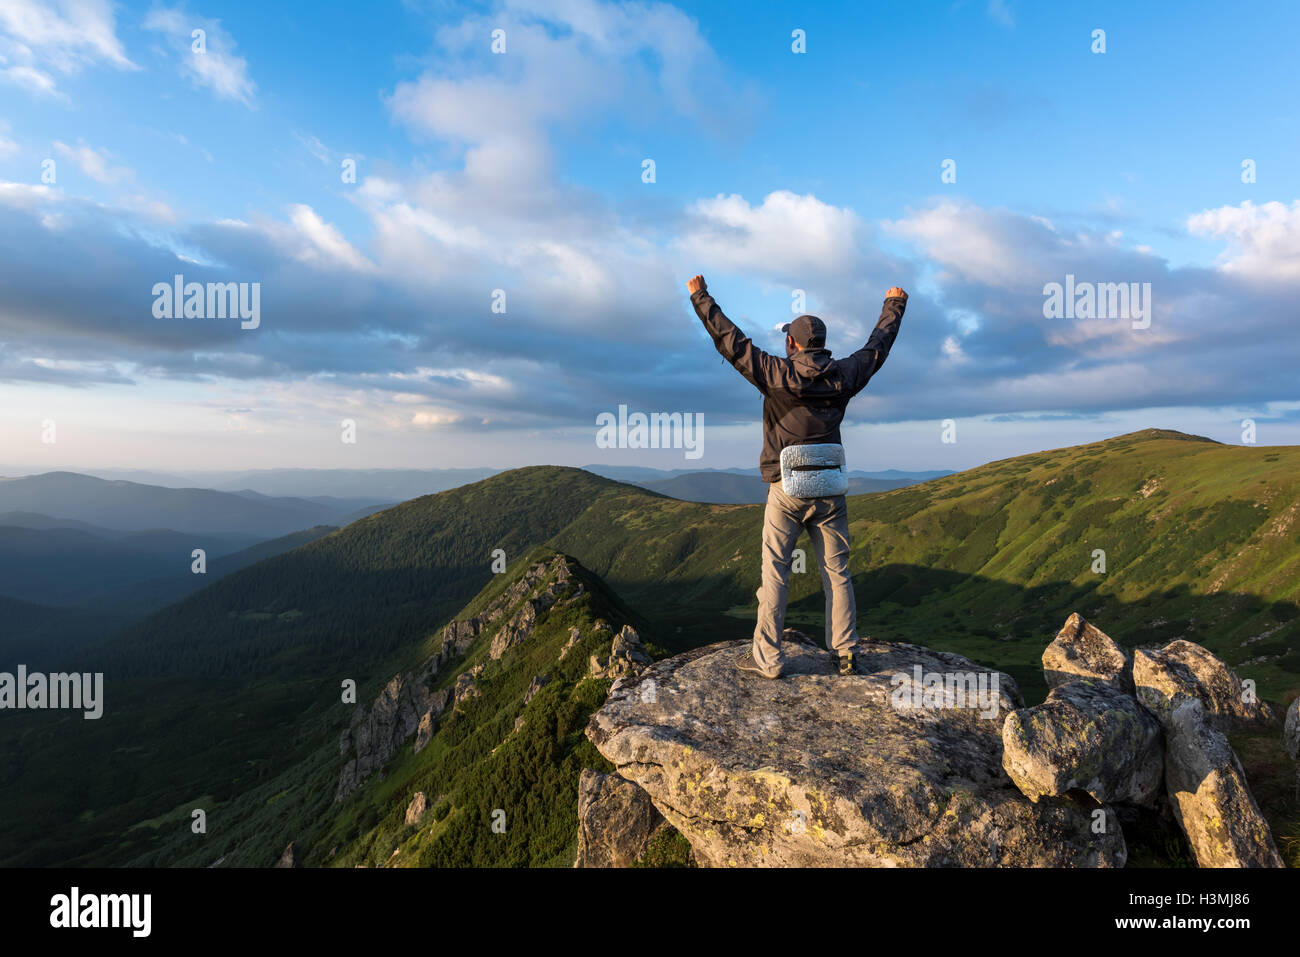 alone tourist on mountain top Stock Photo